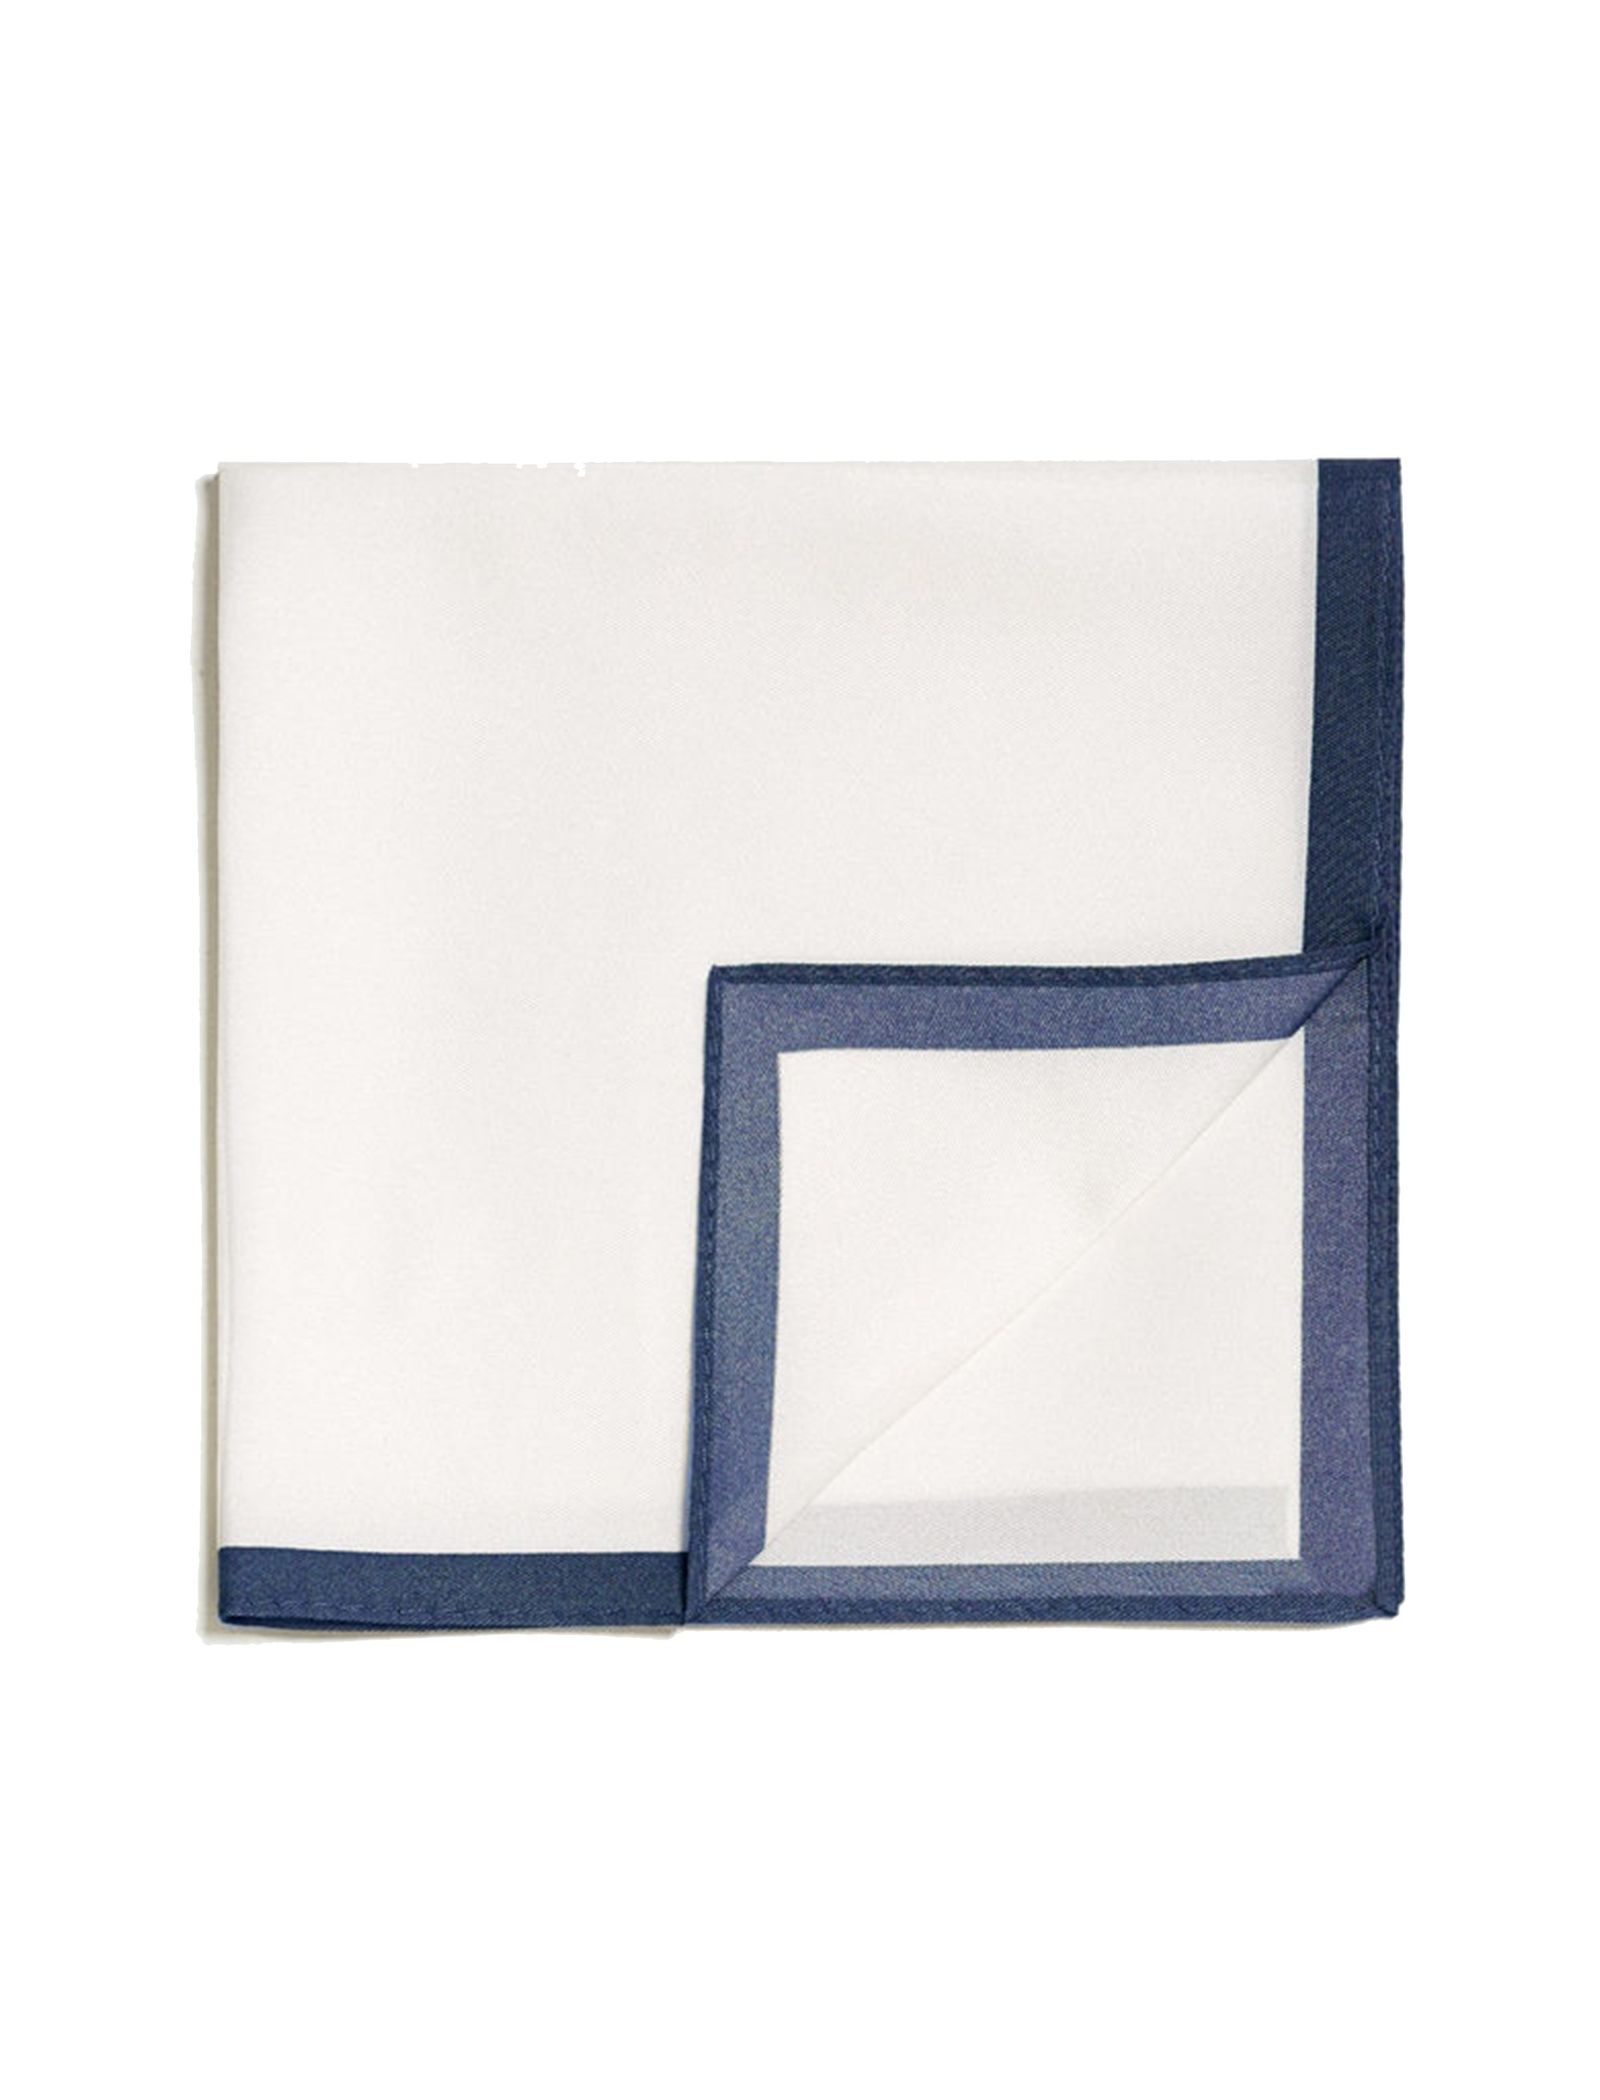 دستمال جیب ابریشم ساده مردانه - مانگو - سفيد و سرمه اي - 2